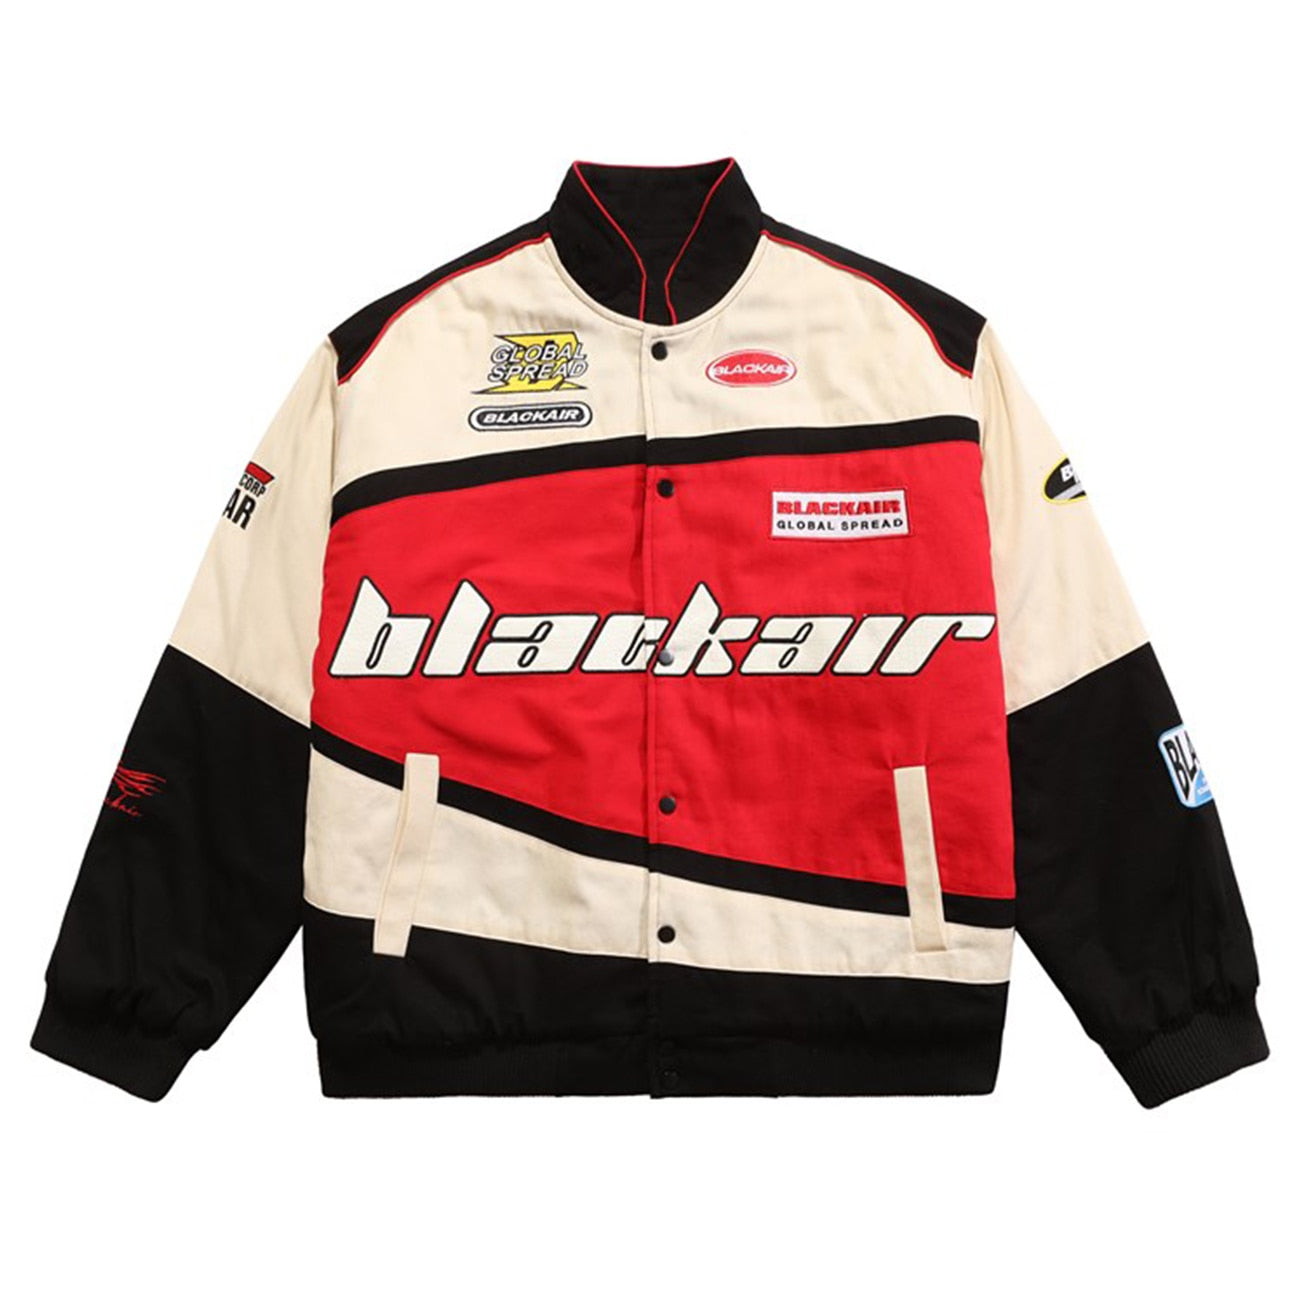 haruja - Baseball "BLACKAIR" Racing red Jacket